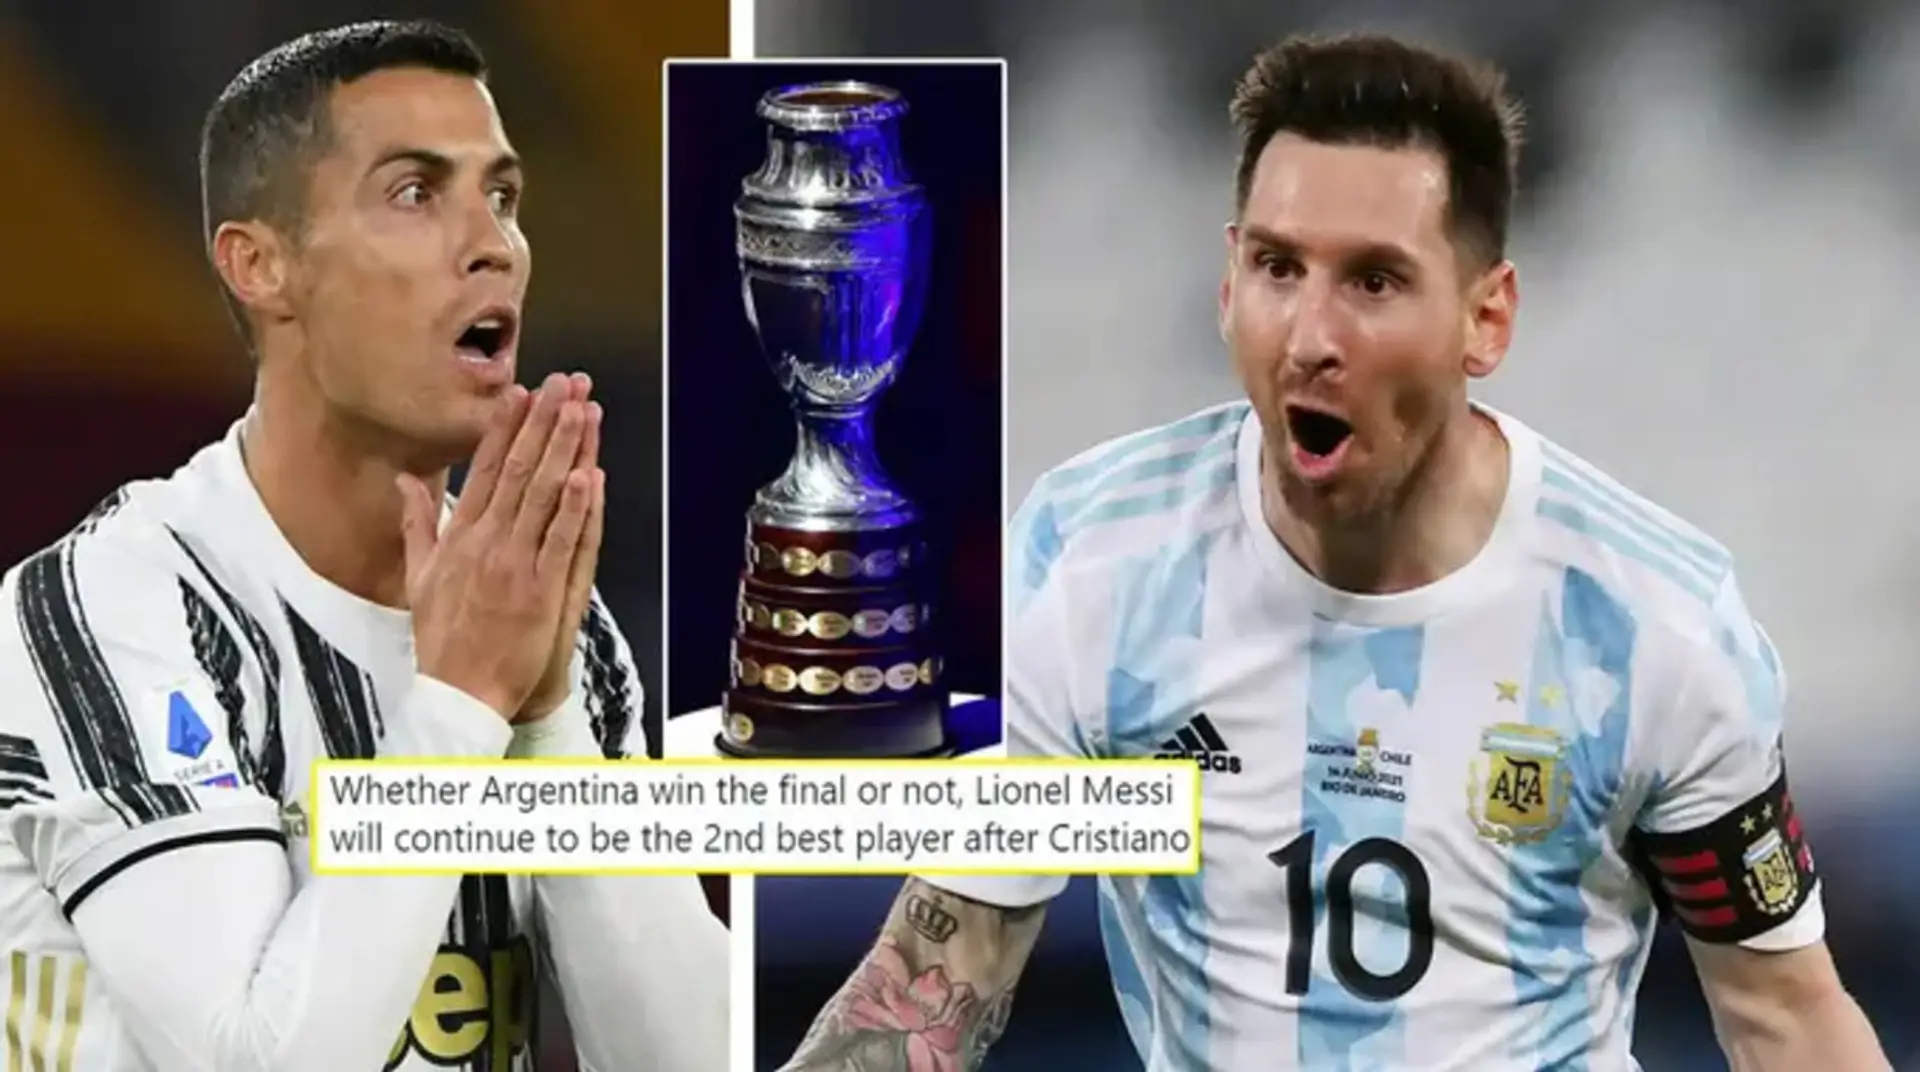 'Messi no tiene nada que demostrar': el mundo reacciona a que los fans de Cristiano preparen para estar en contra de Argentina en la final de la Copa América